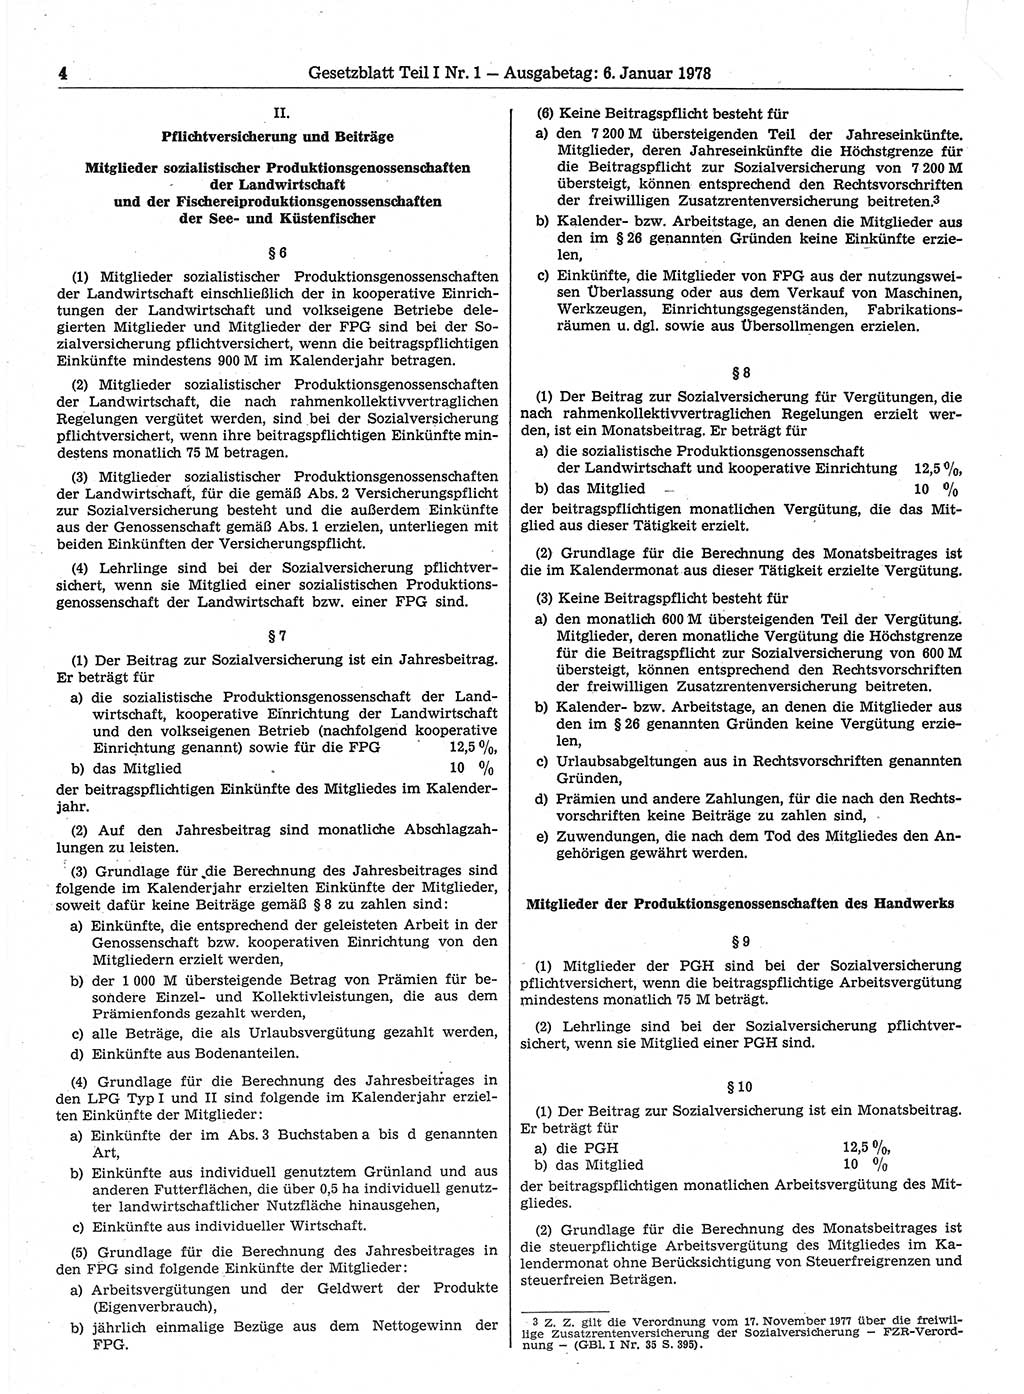 Gesetzblatt (GBl.) der Deutschen Demokratischen Republik (DDR) Teil Ⅰ 1978, Seite 4 (GBl. DDR Ⅰ 1978, S. 4)